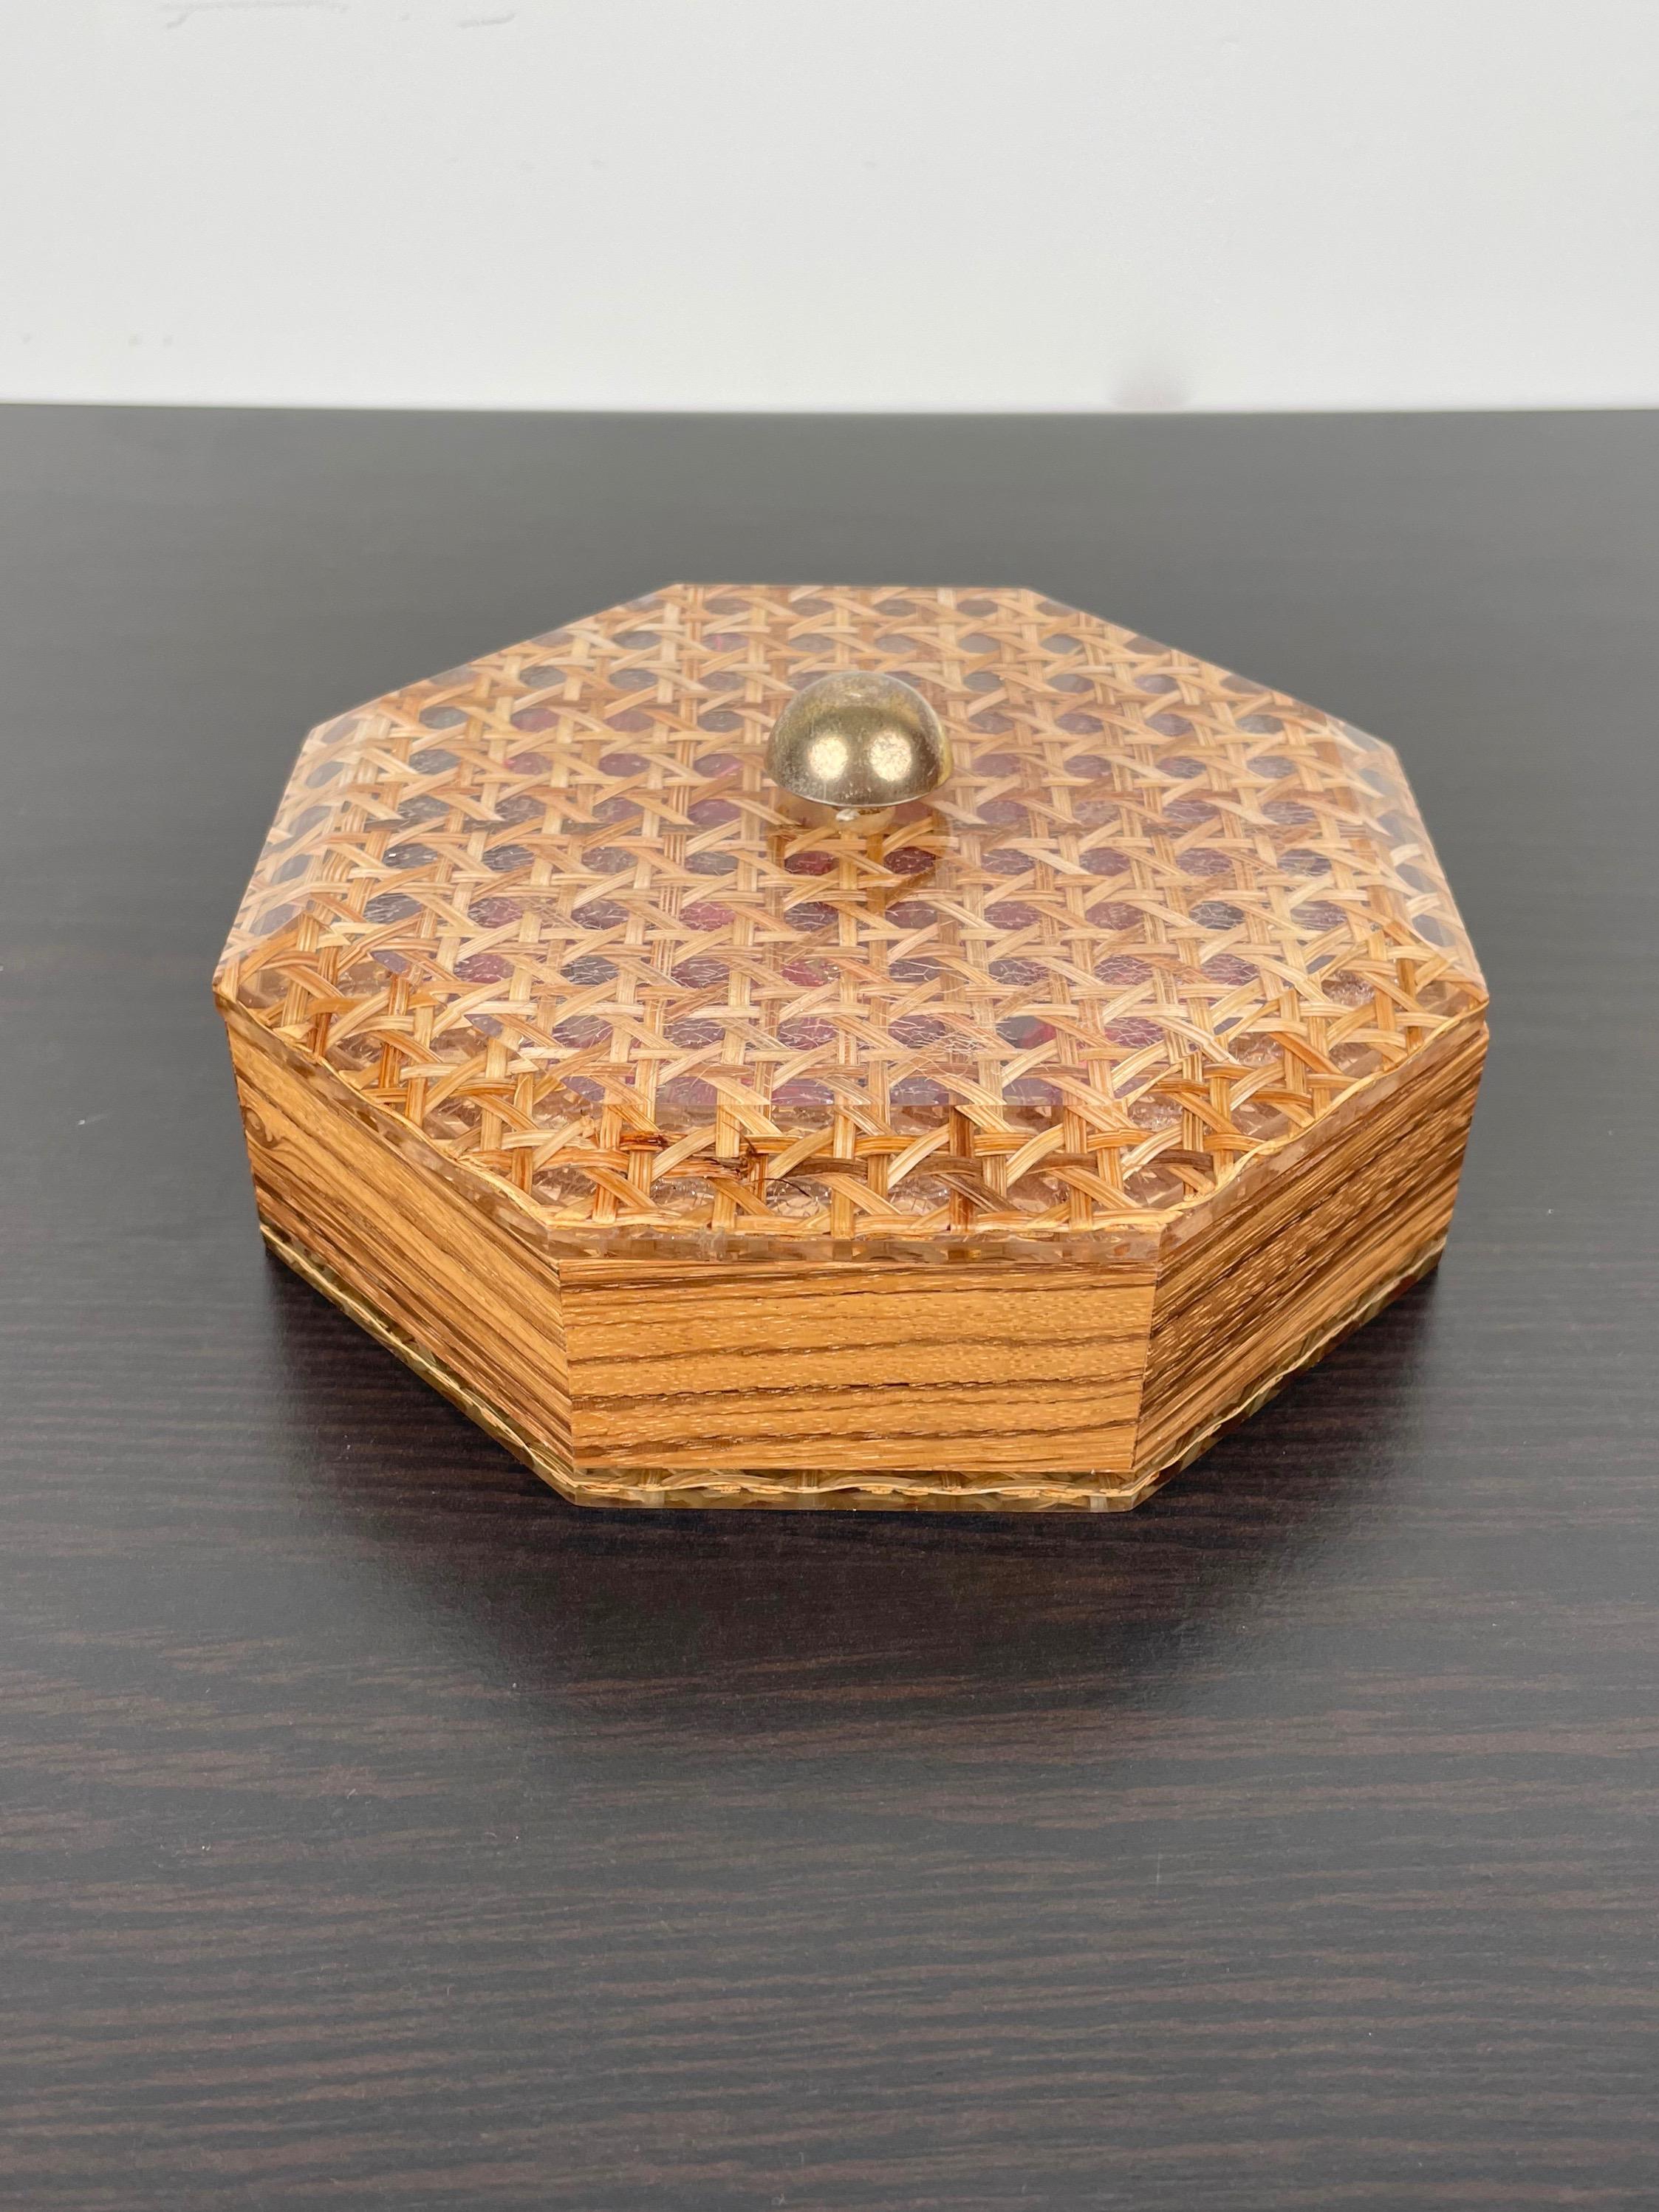 Boîte octogonale en Lucite, osier et bois avec un bouton en laiton de style Christian Dior. Fabriqué en France dans les années 1970.